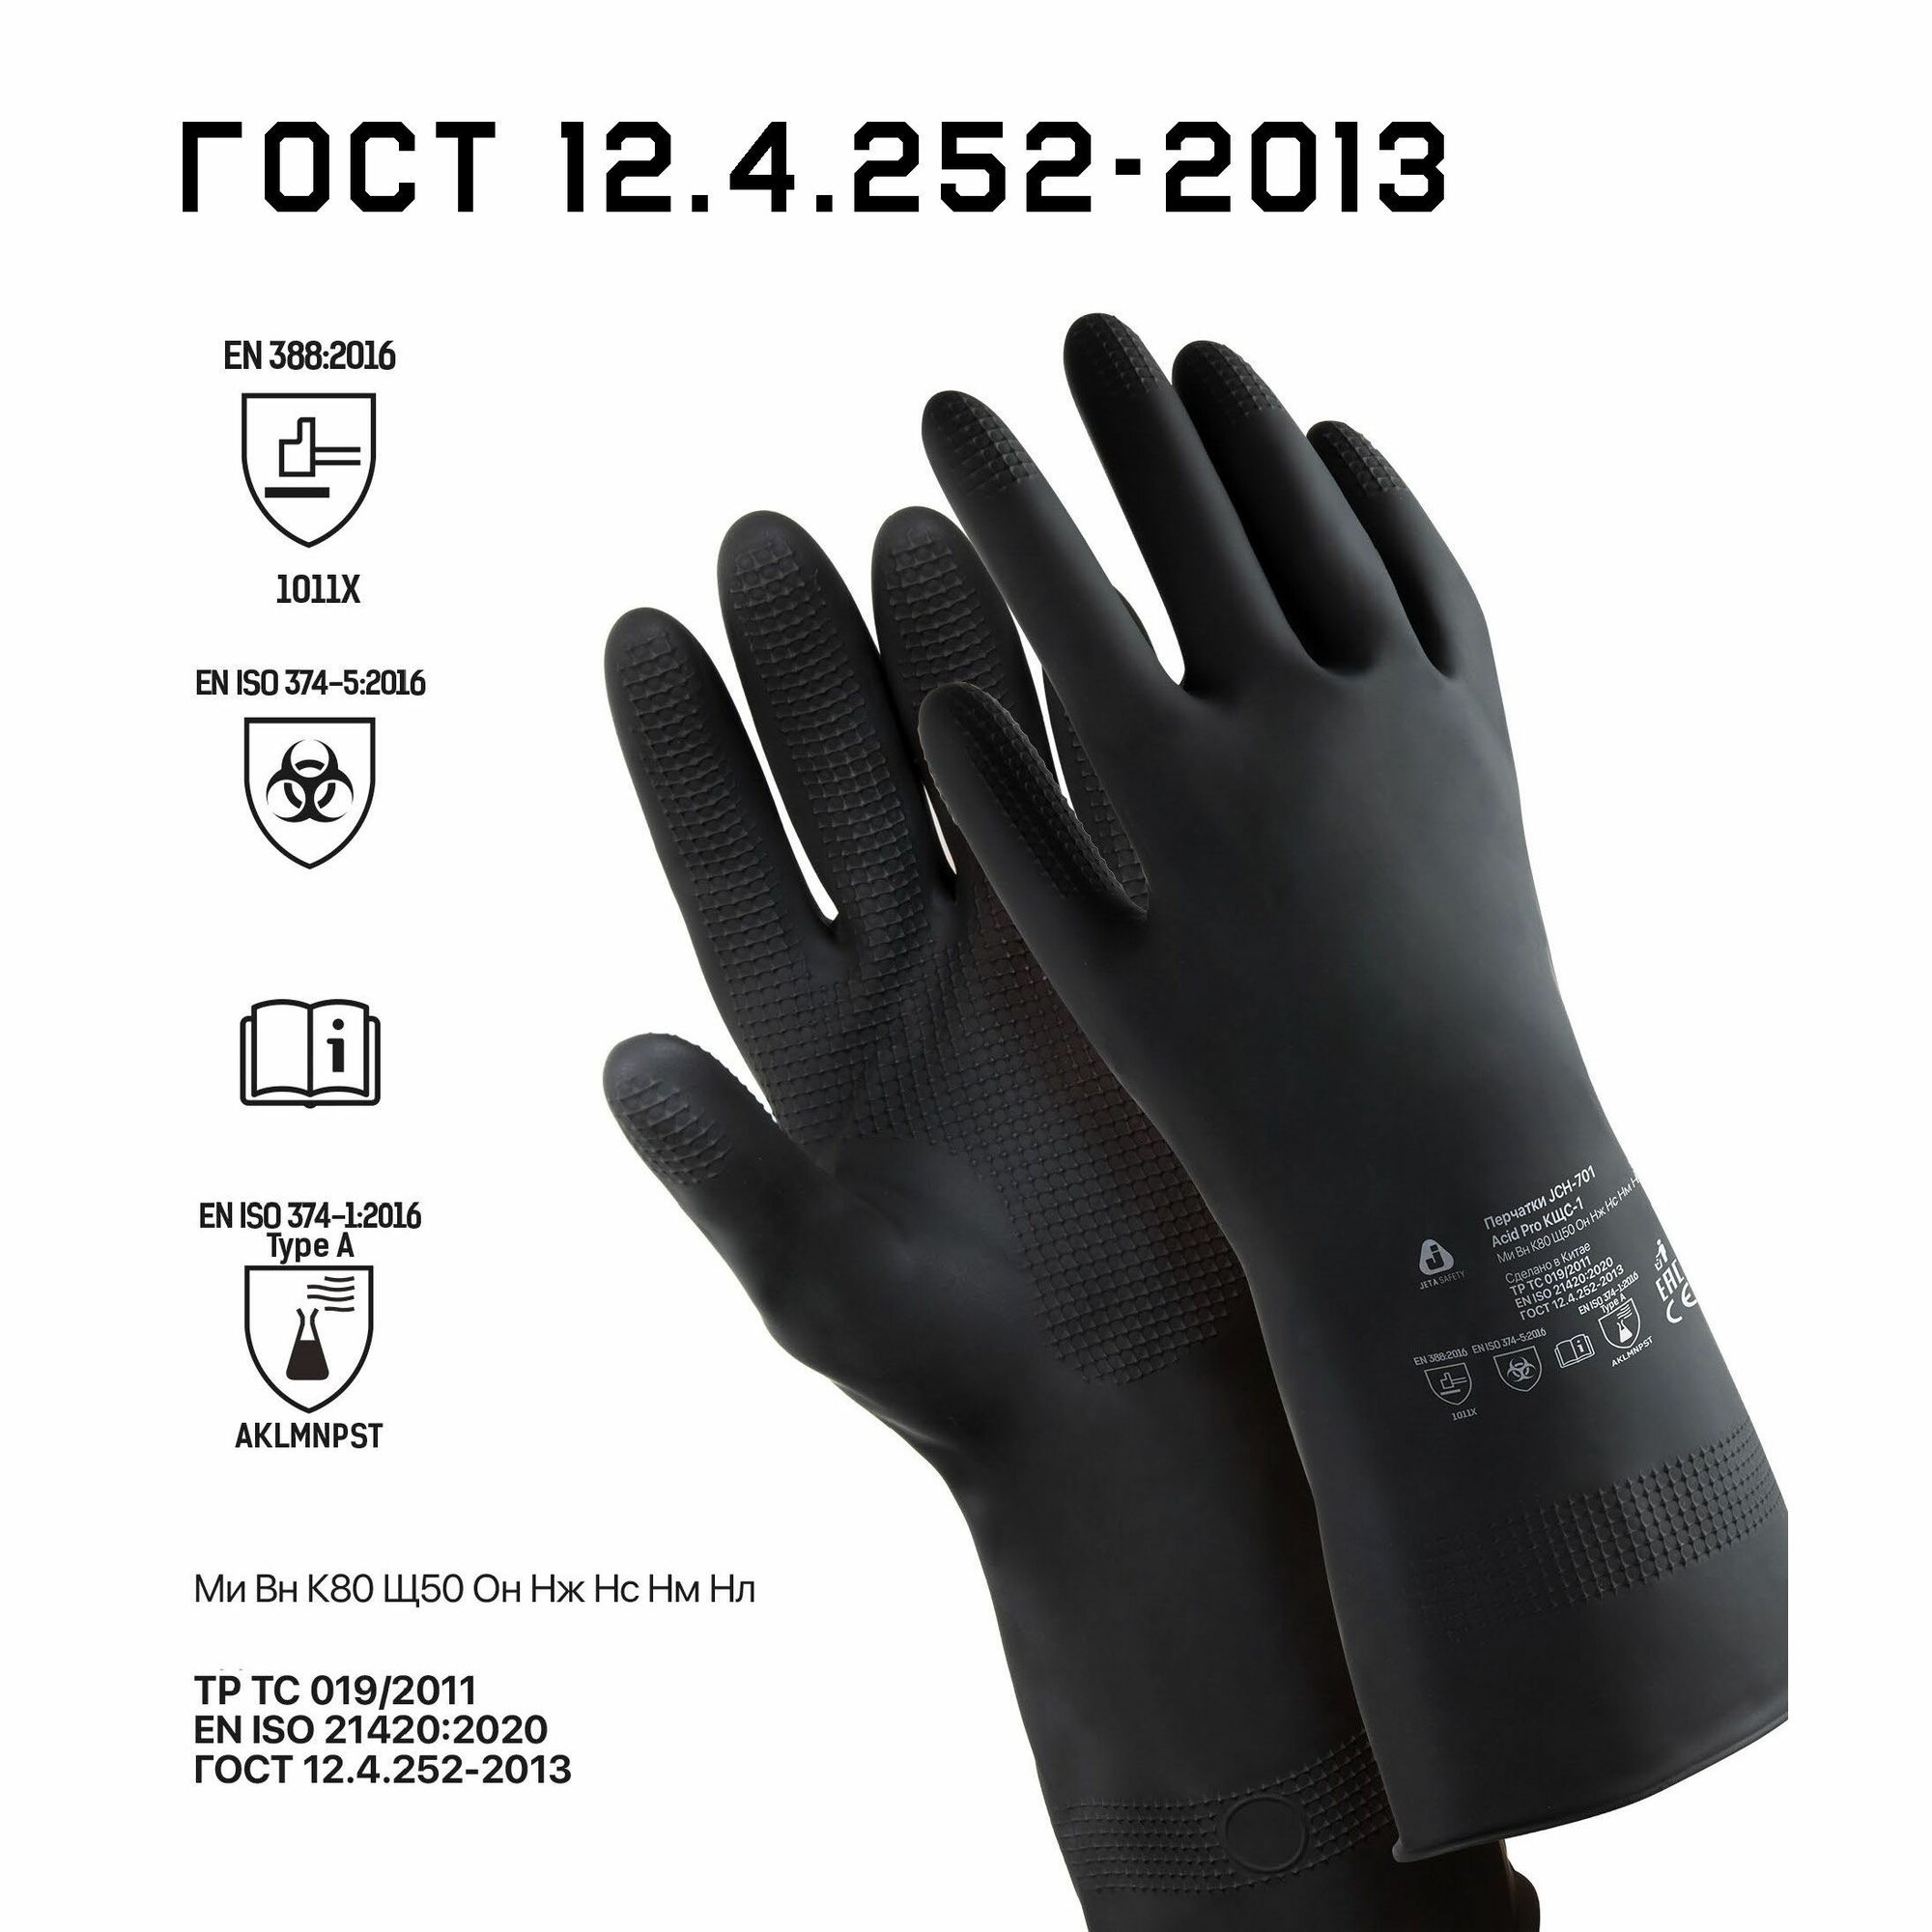 Профессиональные защитные перчатки JCH-701 (XL) Acid Pro КЩС-1 из латекса для защиты от химических воздействий